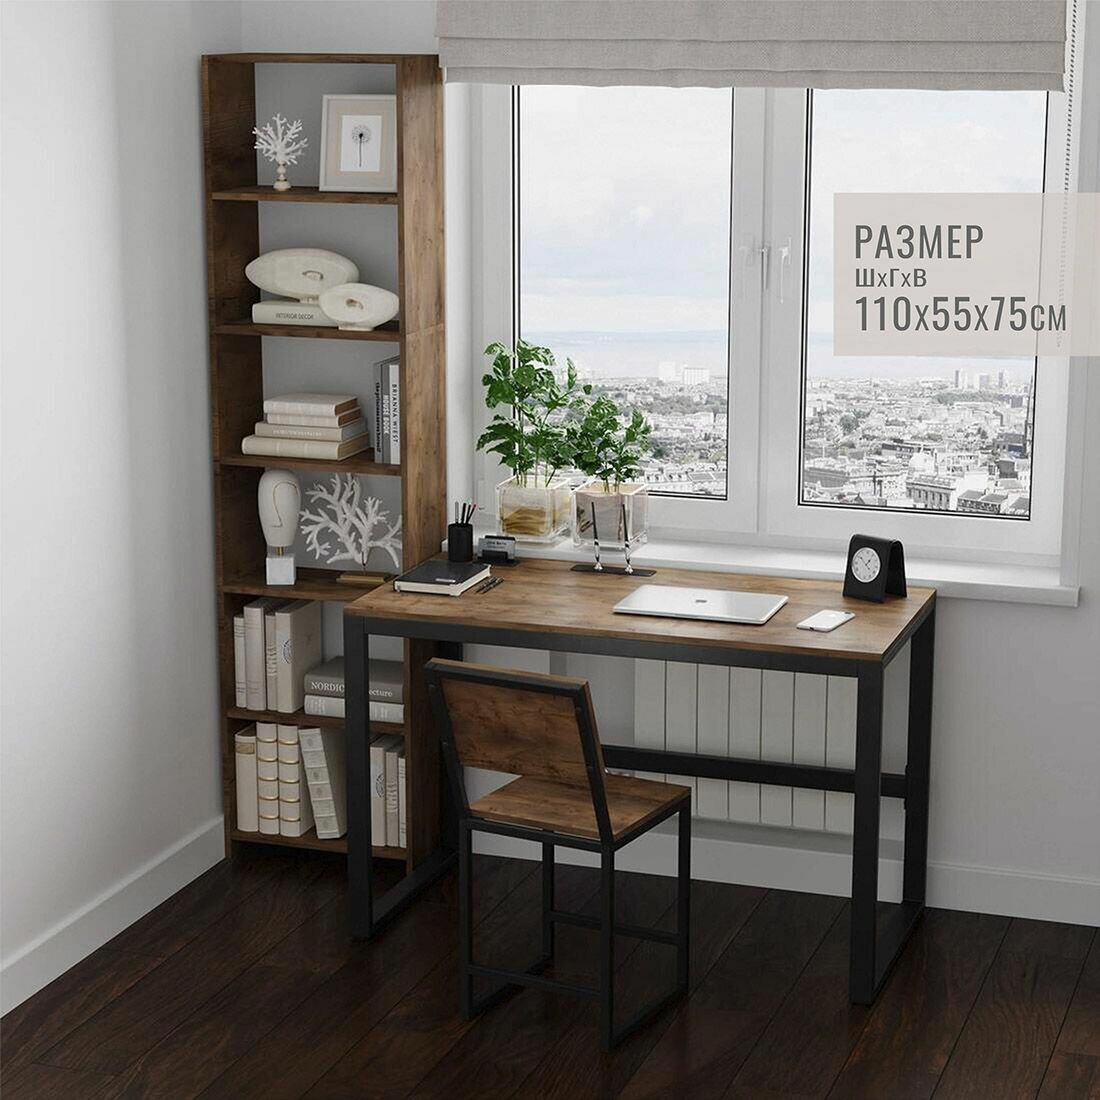 Стол письменный STANFORD loft темно-коричневый компьютерный офисный кухонный обеденный мебель лофт 110x55x75 см 1шт Гростат